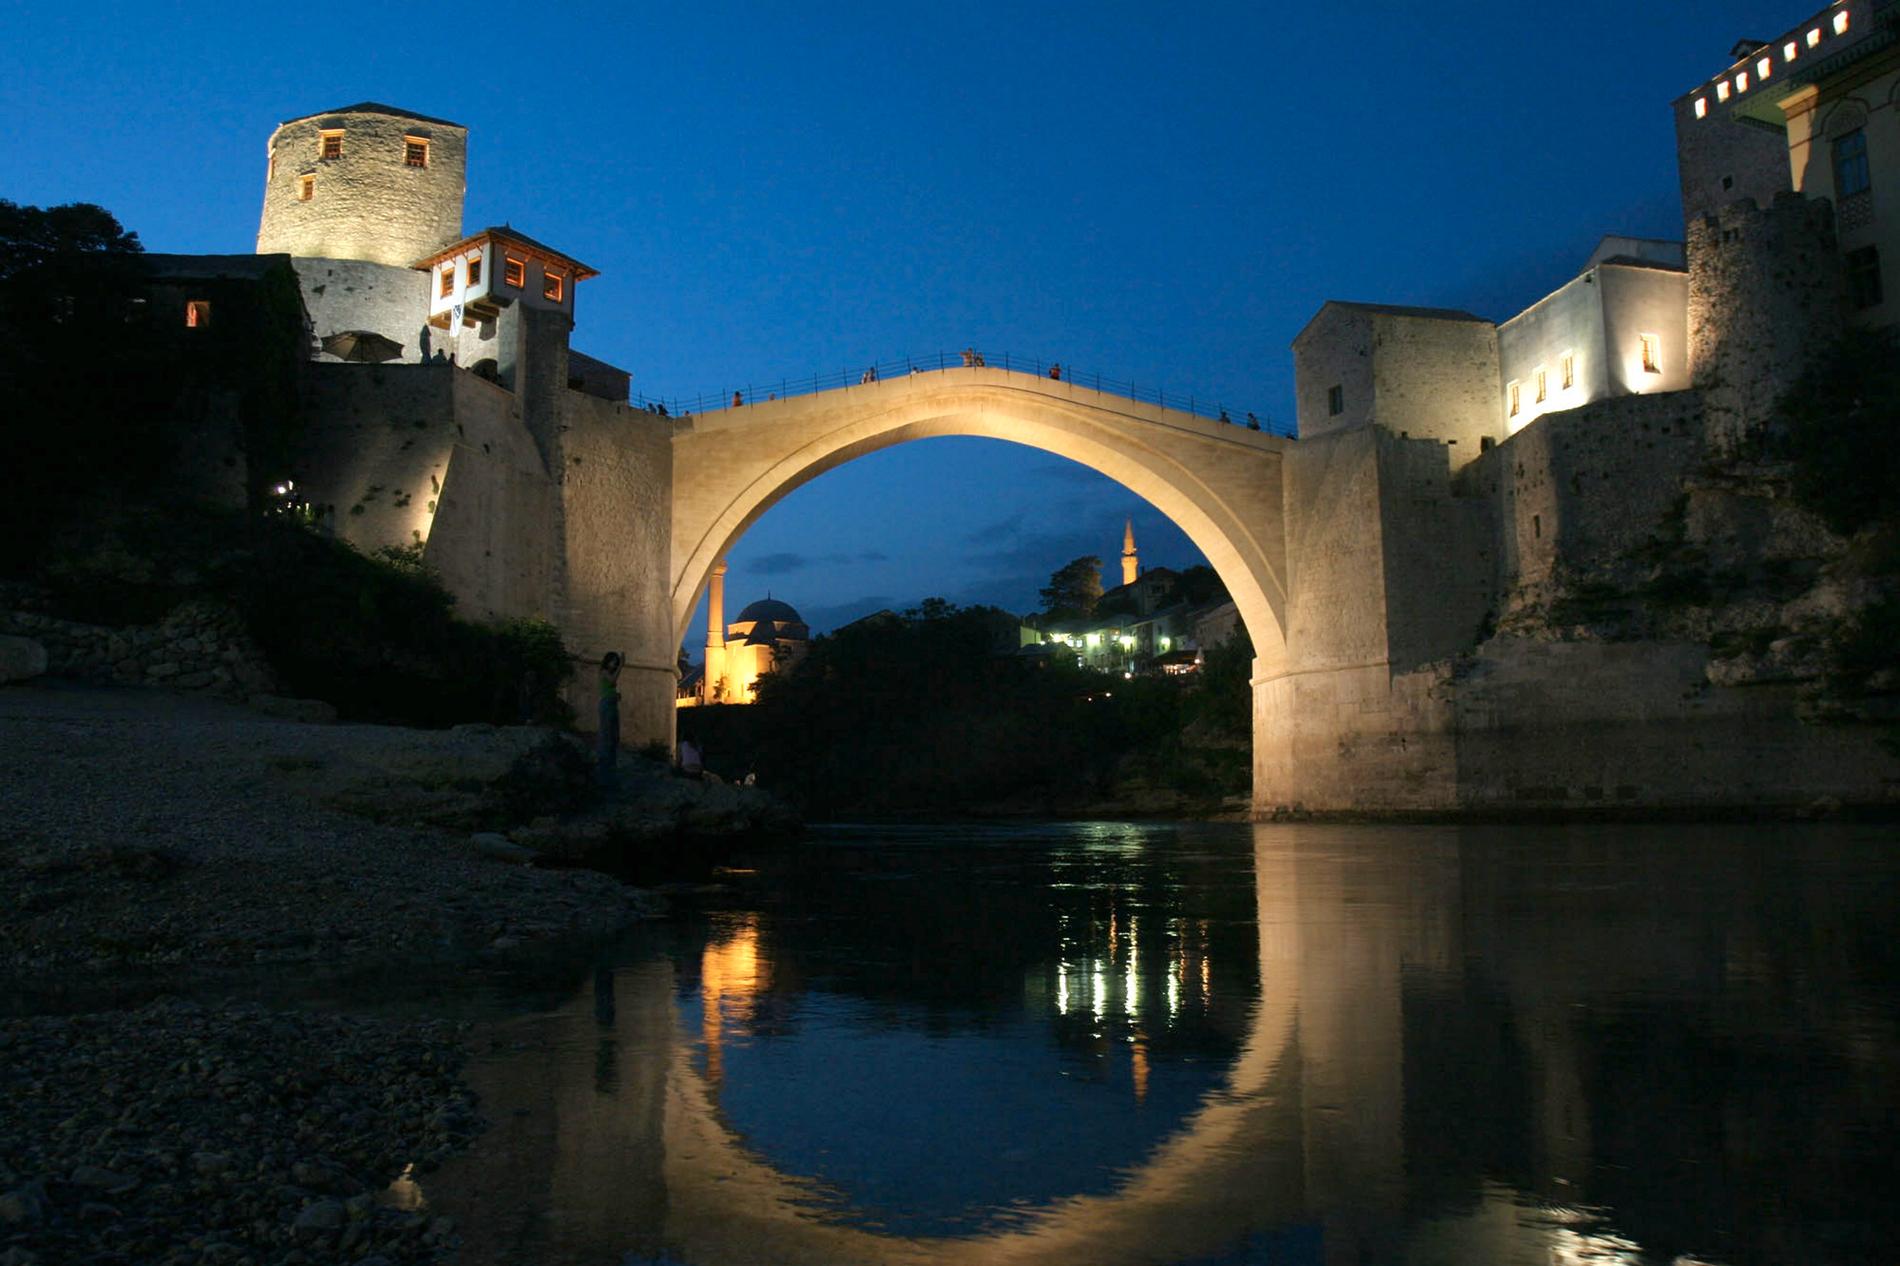 Omkring 130–000 människor dödades i krigen i före detta Jugoslavien. Den berömda 1500-talsbron som förstördes i Mostar i Bosnien blev en symbol för kriget. På bilden syns en återuppbyggnad av bron.